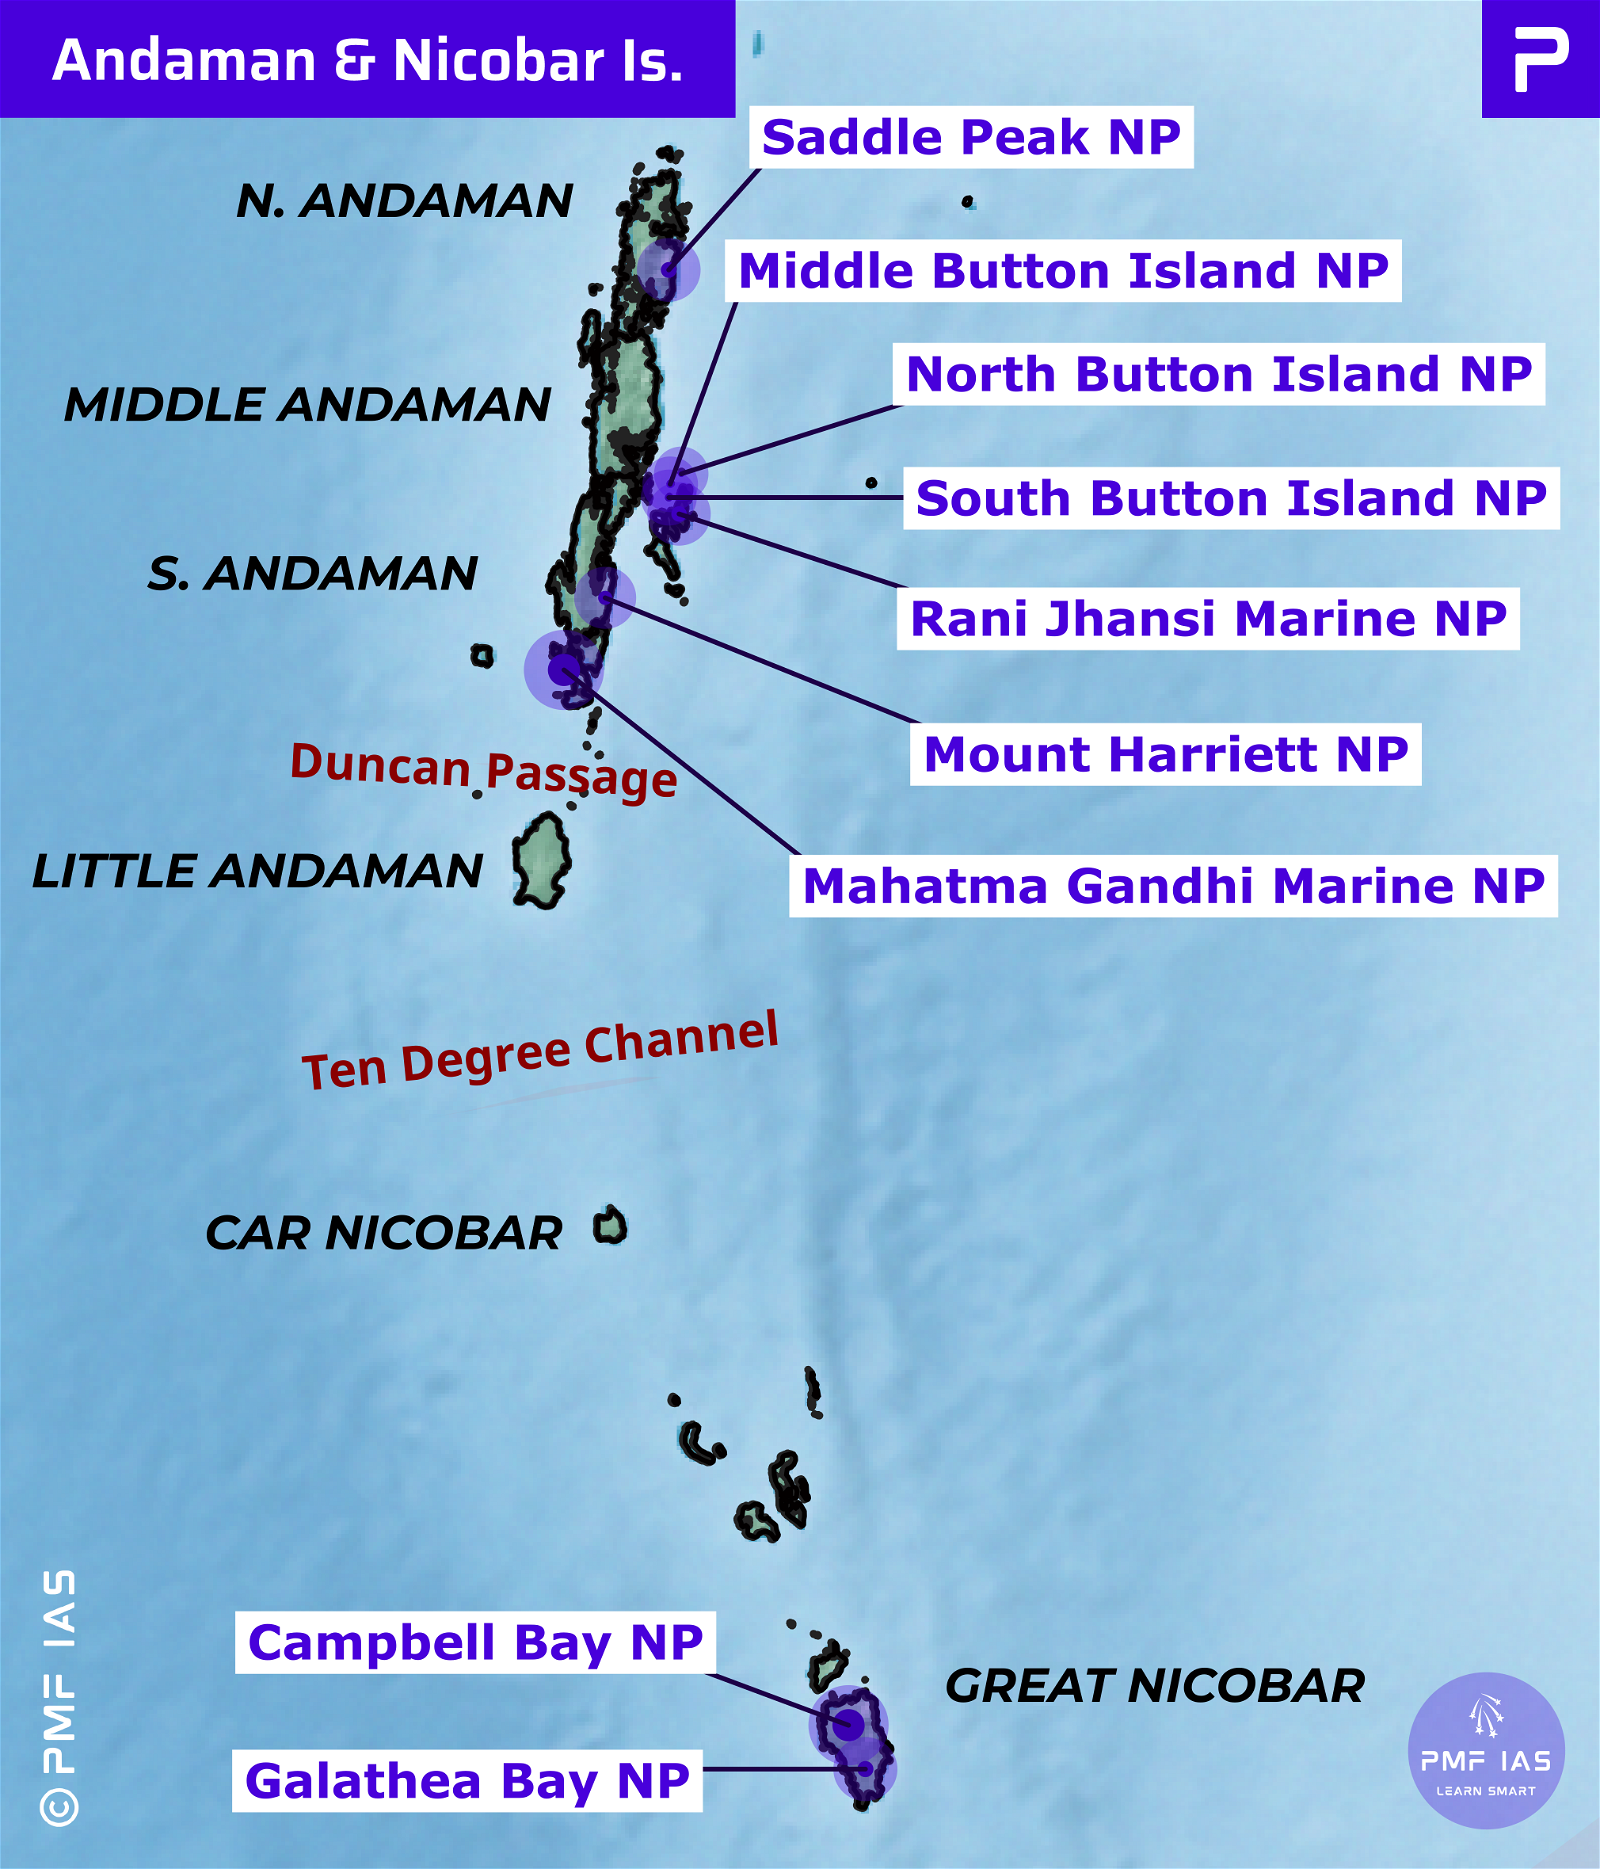 National Parks of Andaman & Nicobar Islands